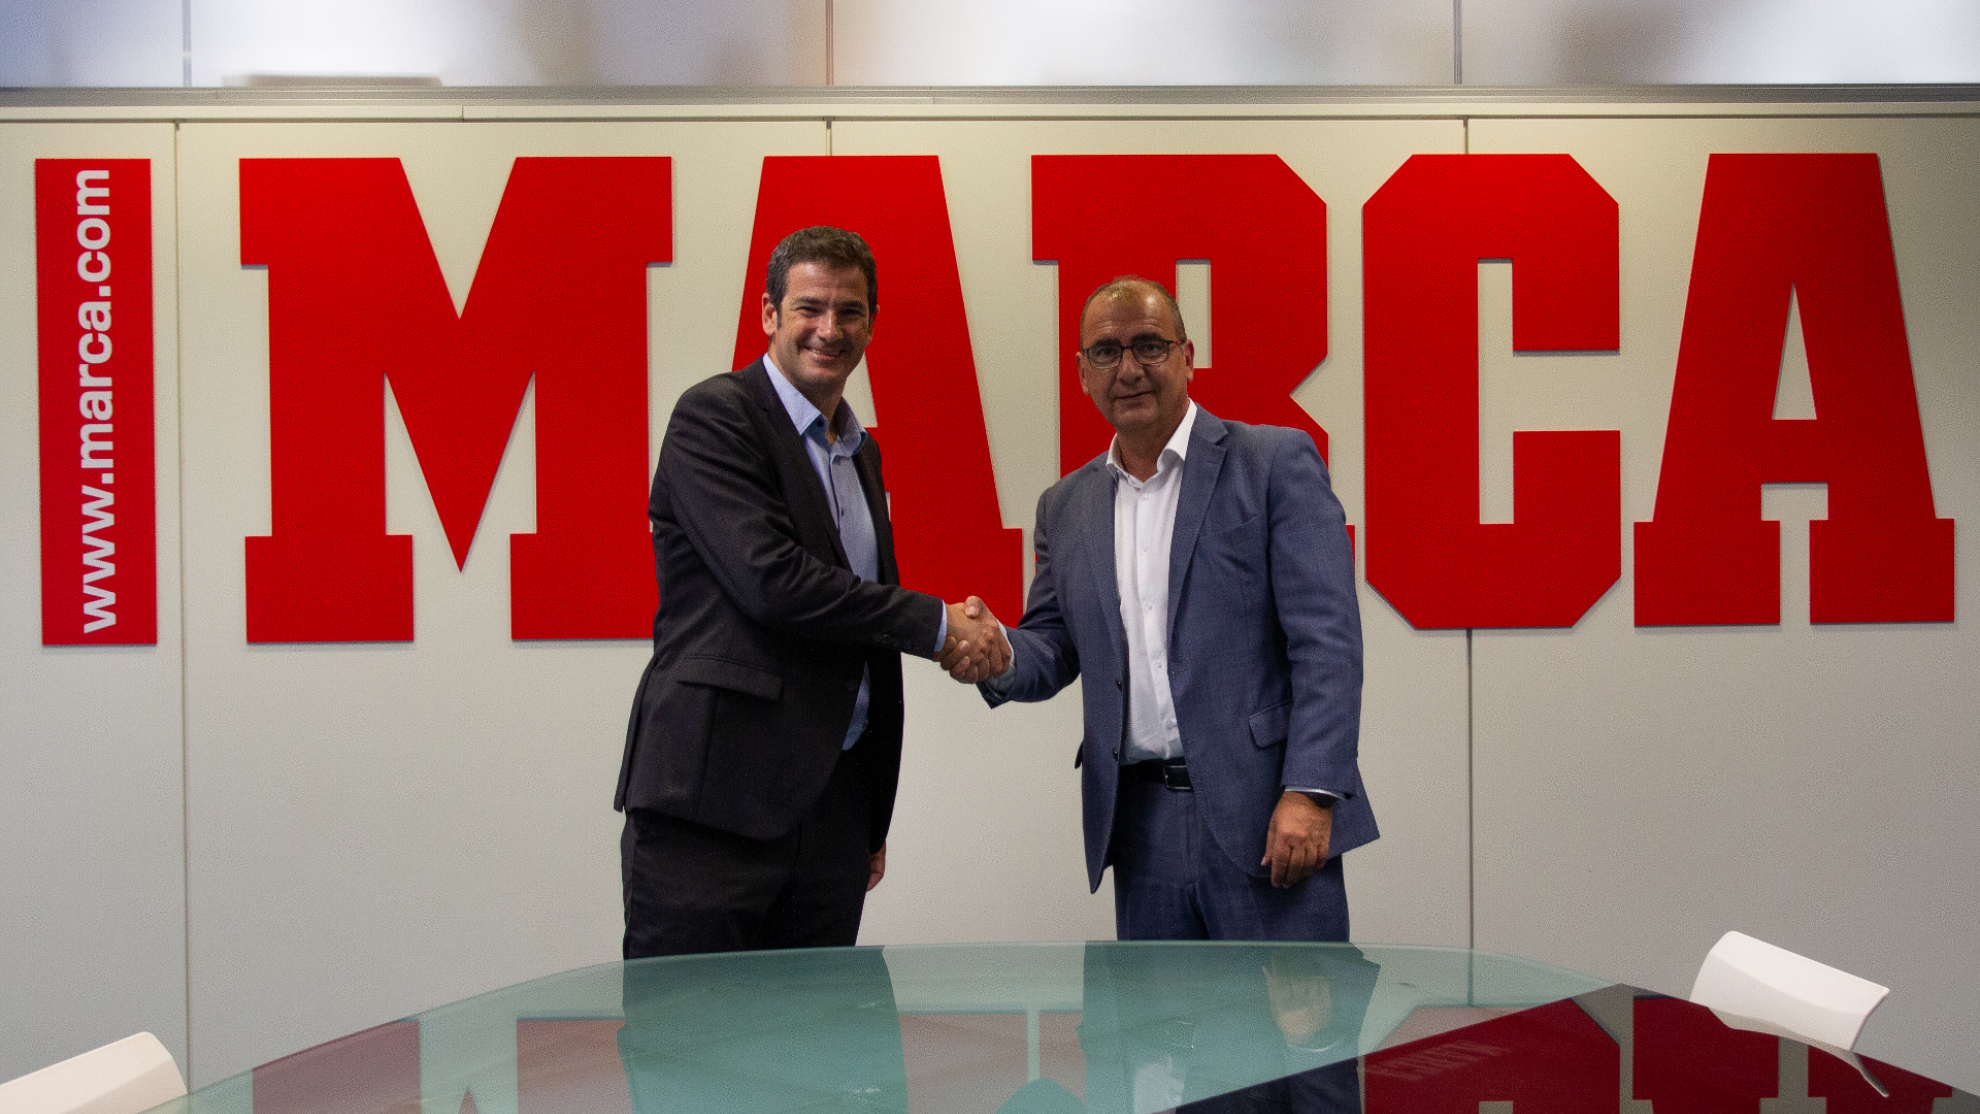 Ramón Alarcón, director general del Betis, y Juan Ignacio Gallardo, director de MARCA, sellan el acuerdo de 'Media partner'.